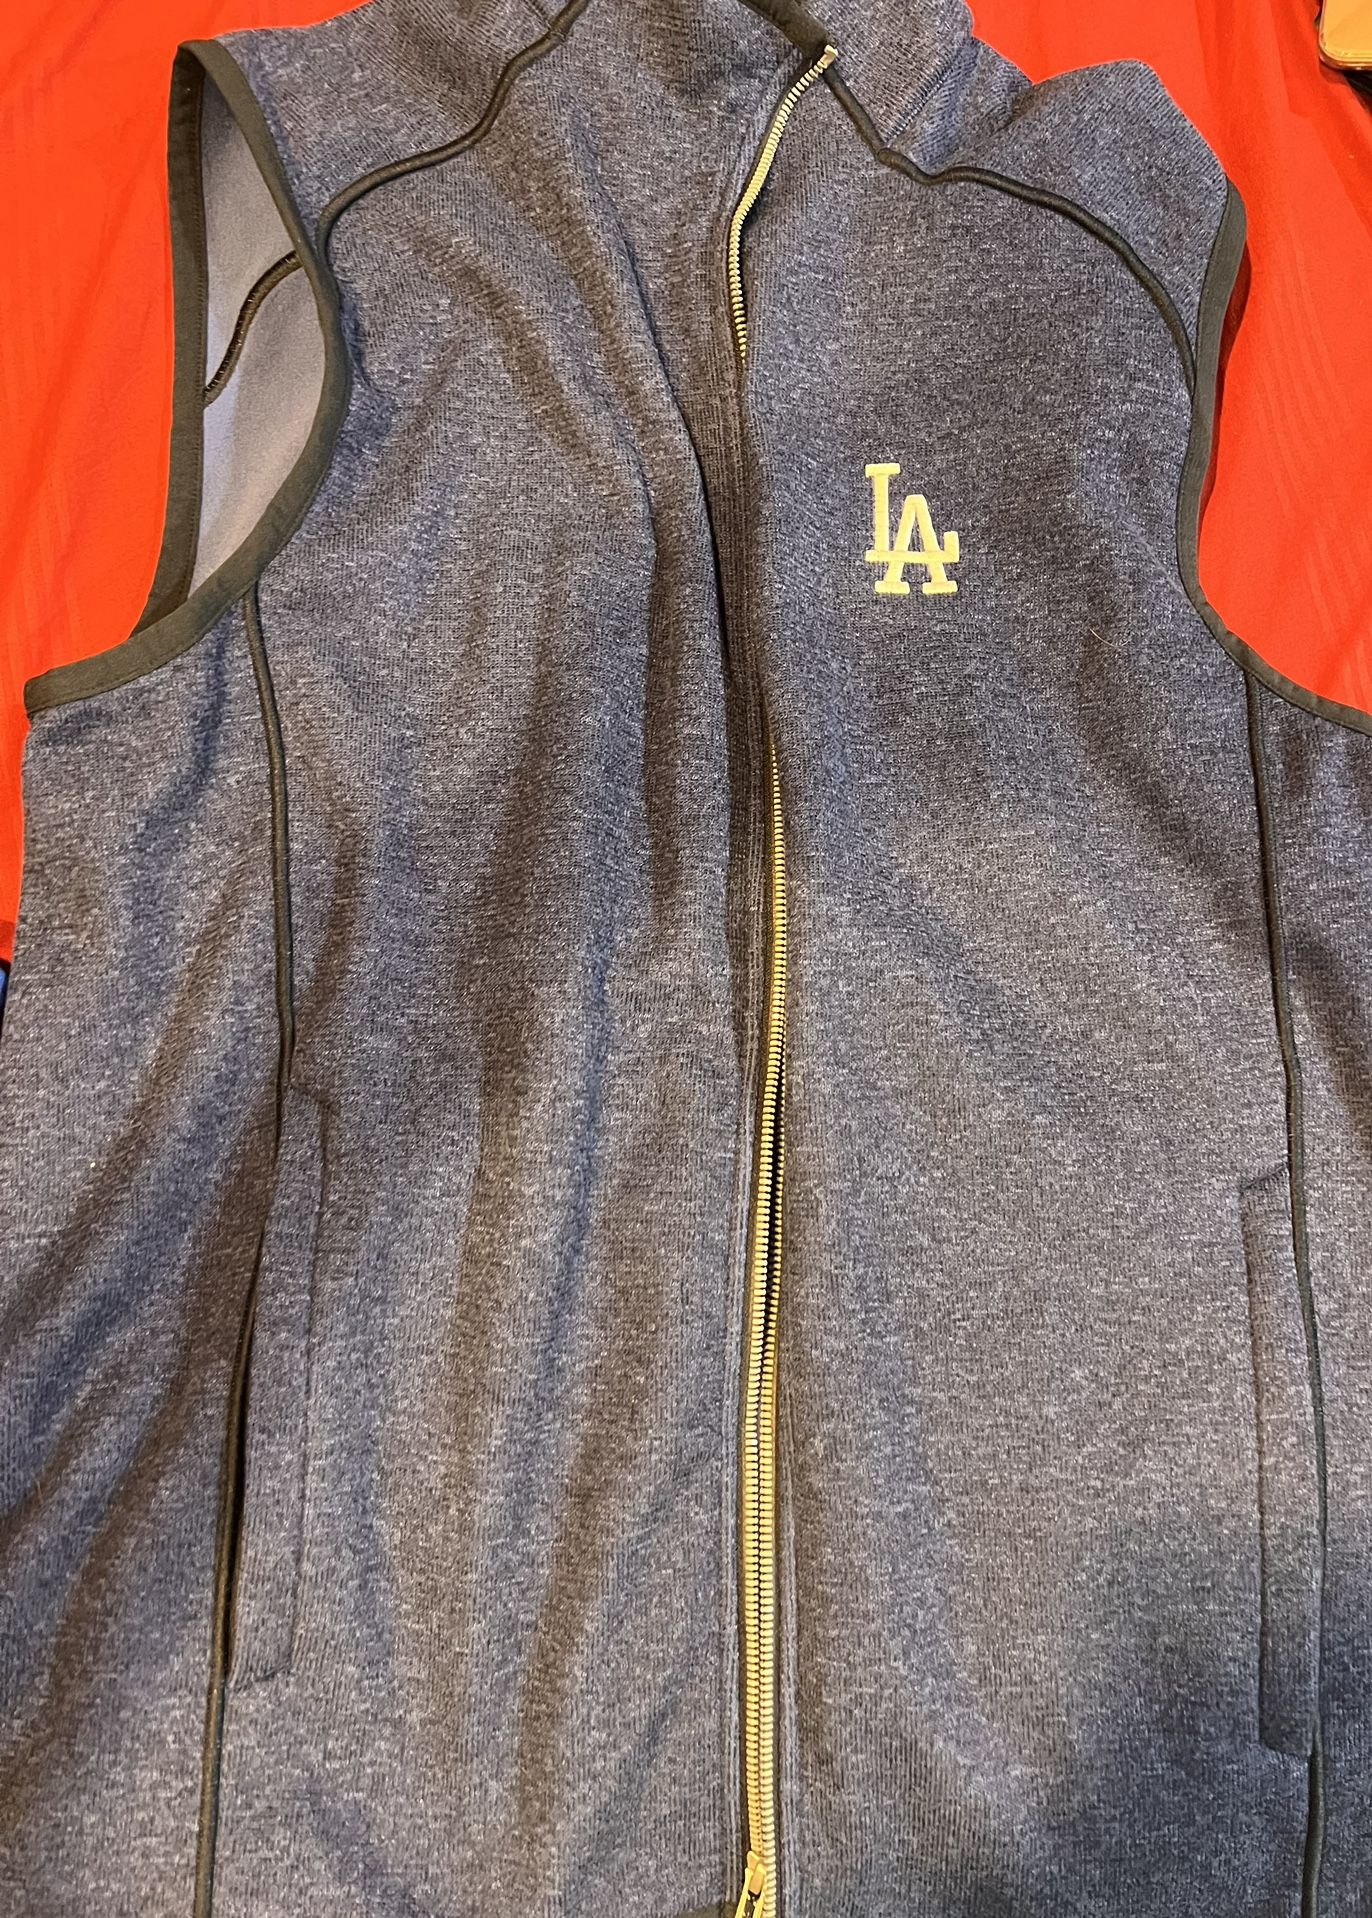 LA Dodgers Zipper Vest Sweater Size Large 